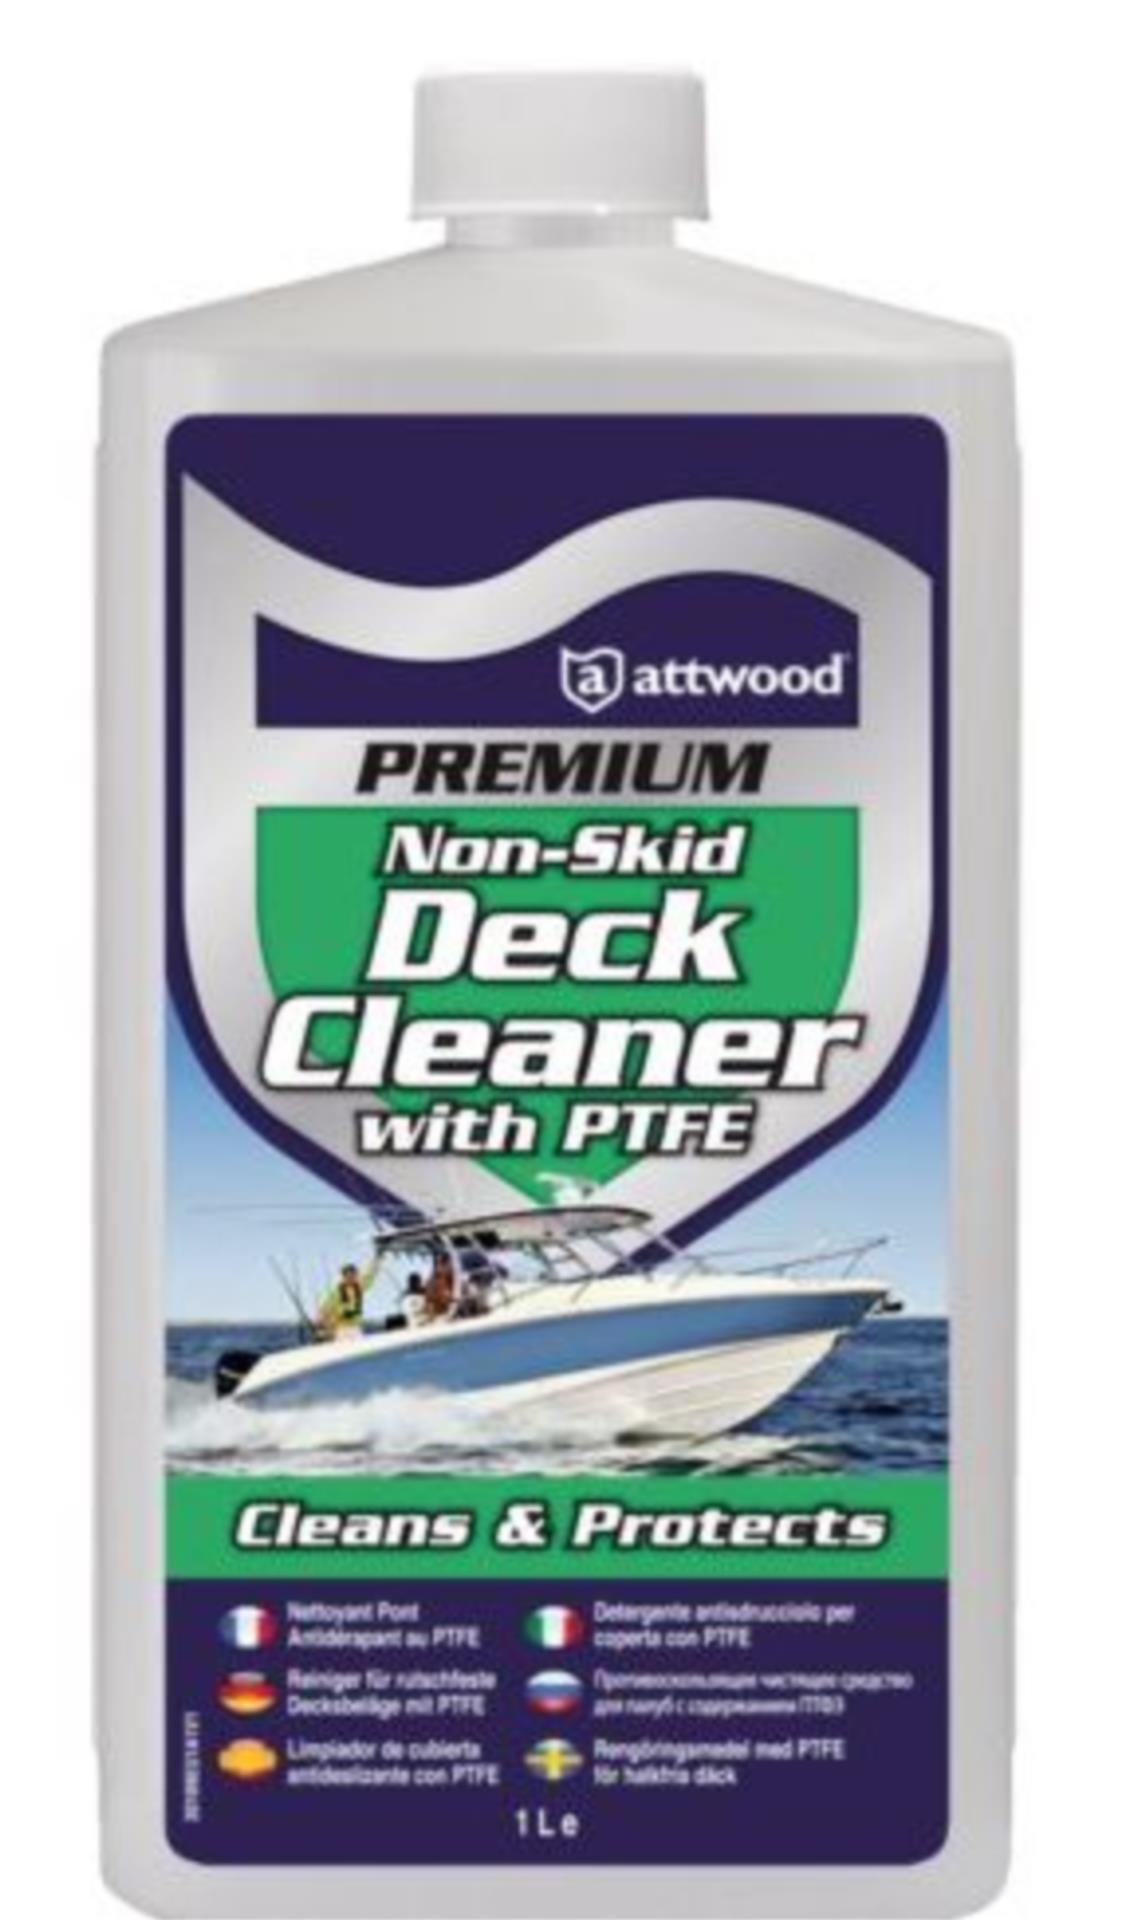 Attwood Premium Non-Skid Deck Cleaner mit PTFE, 1000 ml